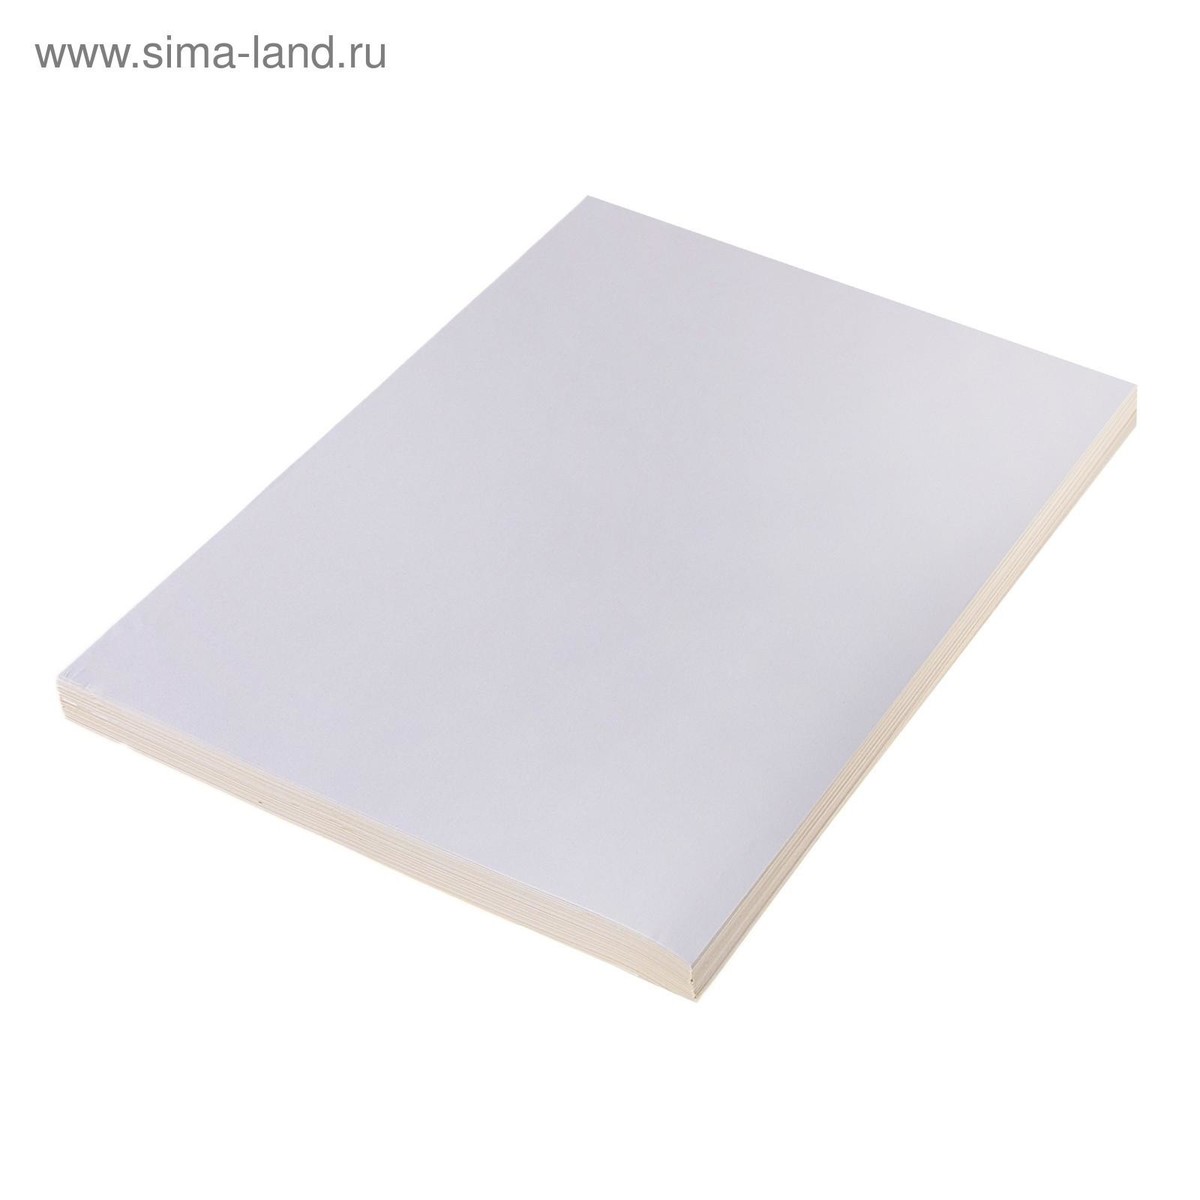 Бумага а4, 25 листов, 80 г/м, самоклеящаяся, белая матовая краска ярославские краски faktor акриловая фасадная влагостойкая матовая белая 6 кг